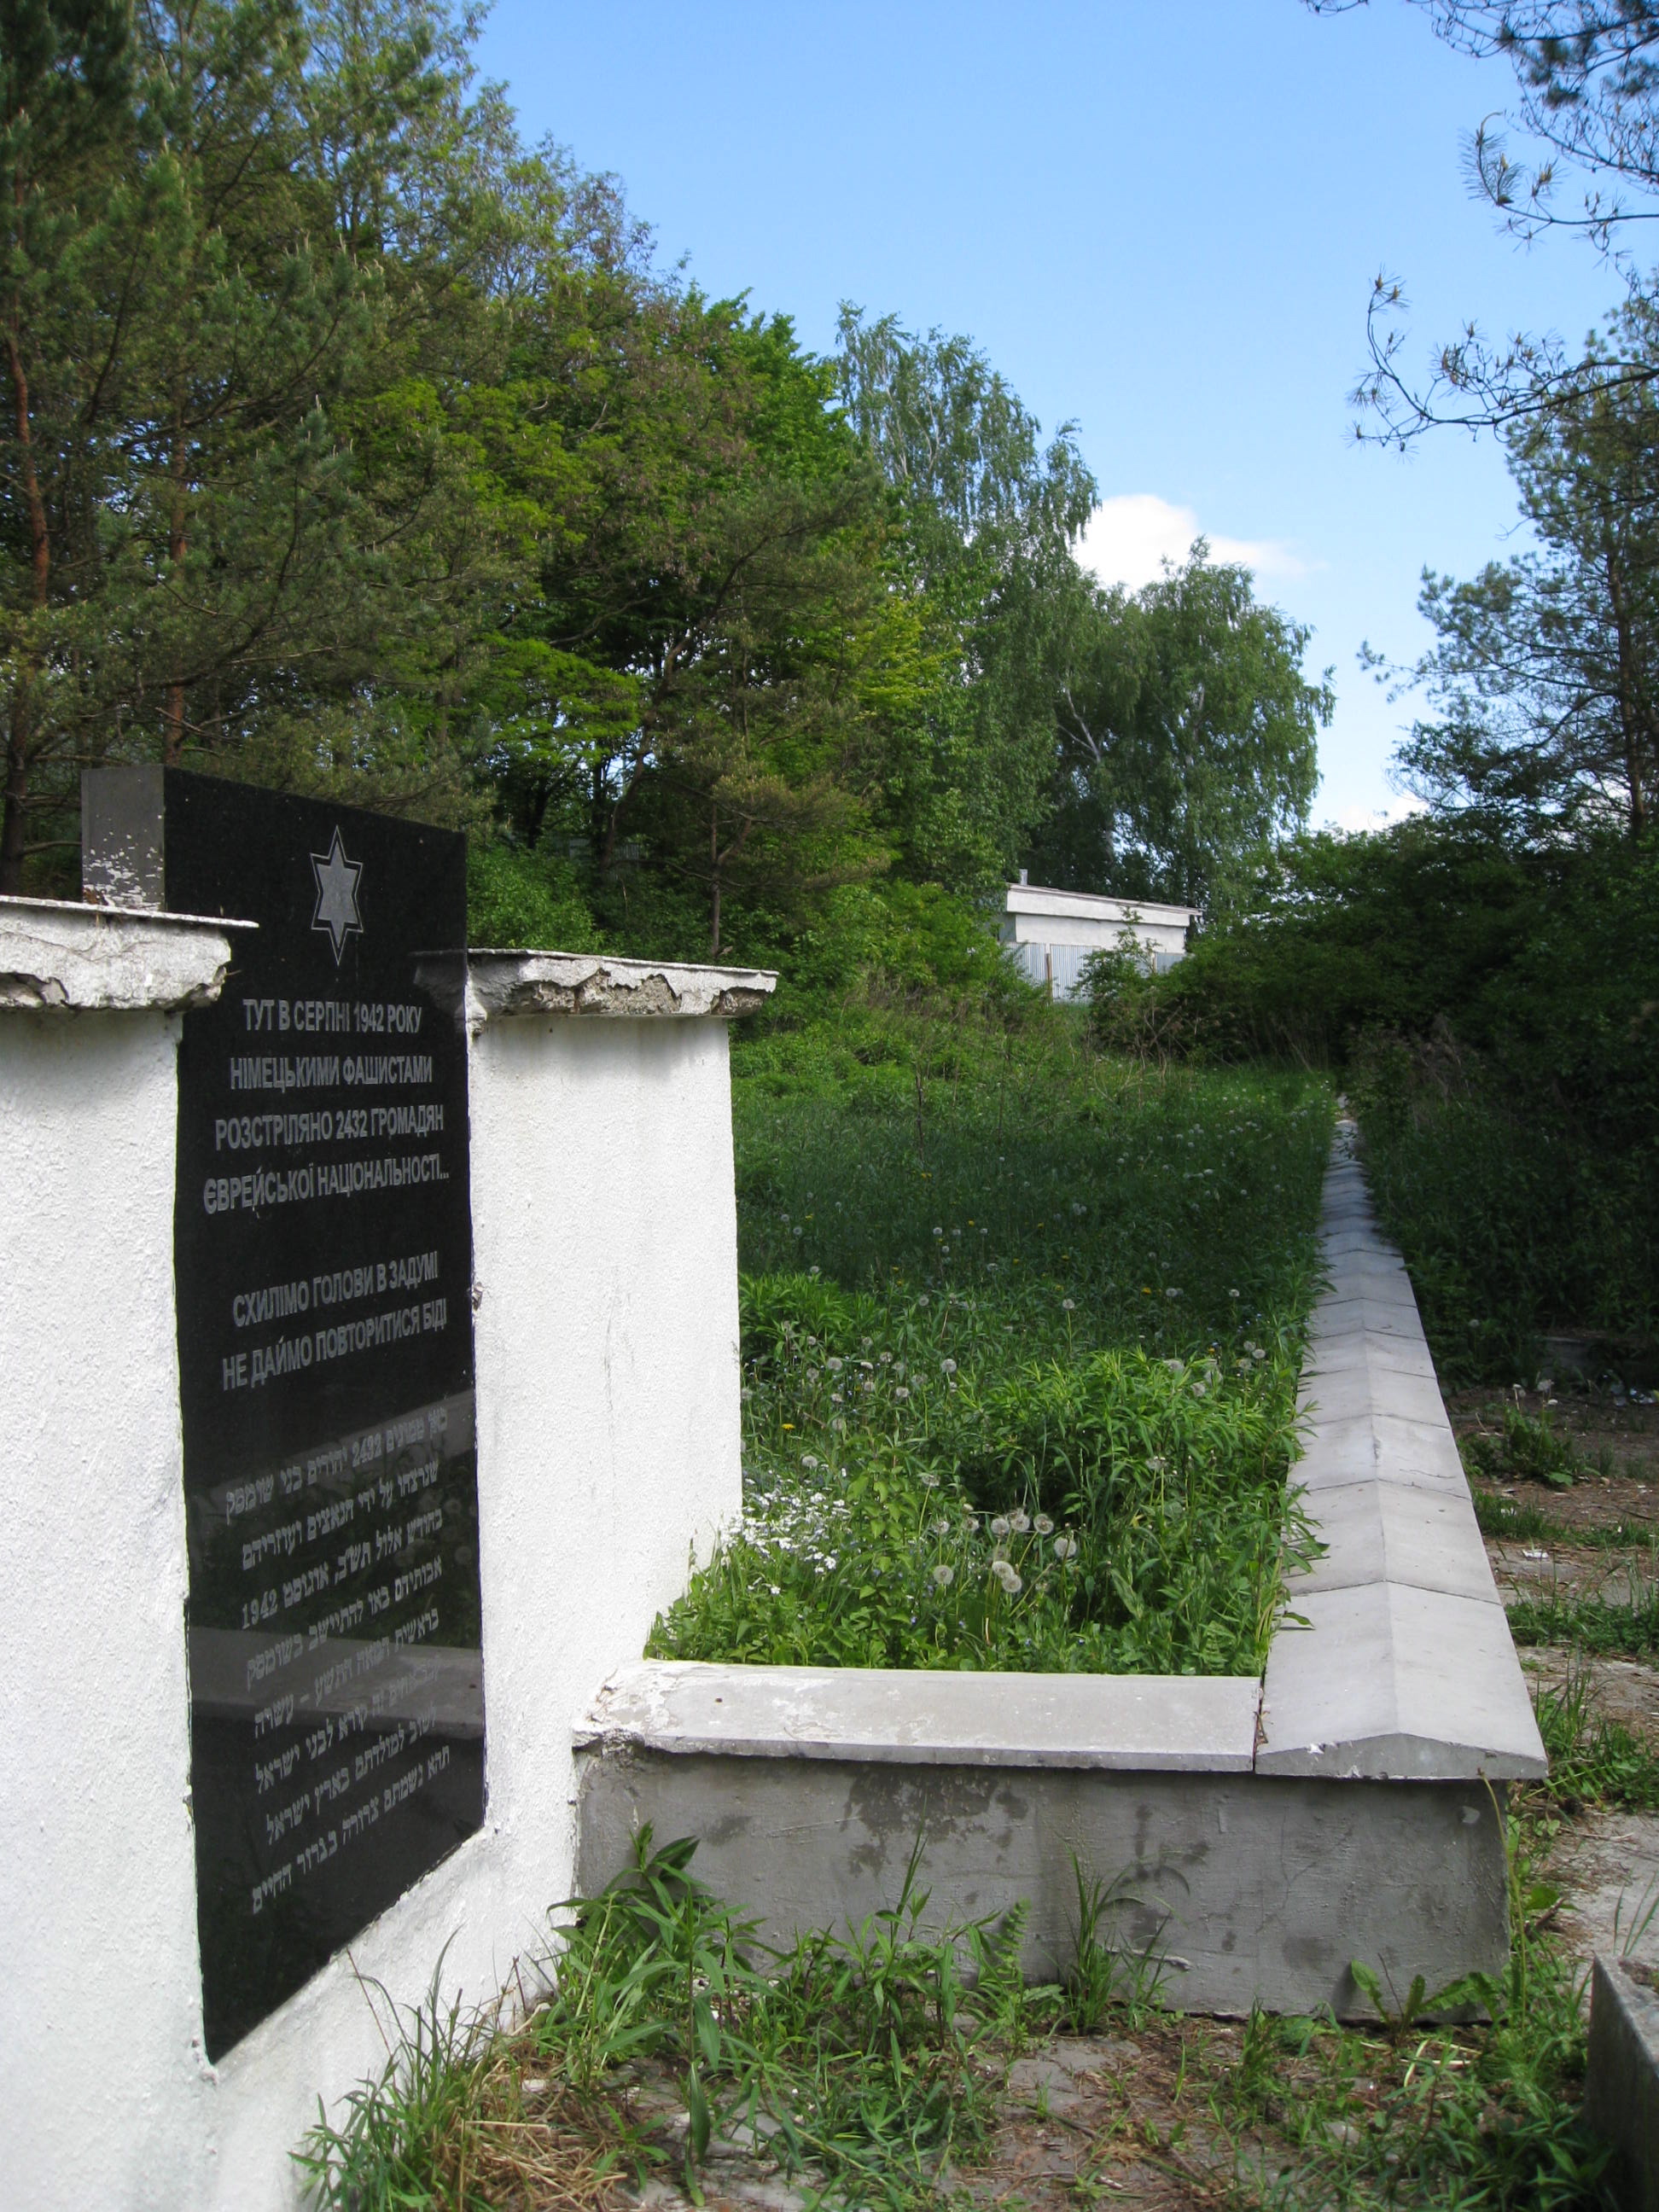 Mass grave memorial